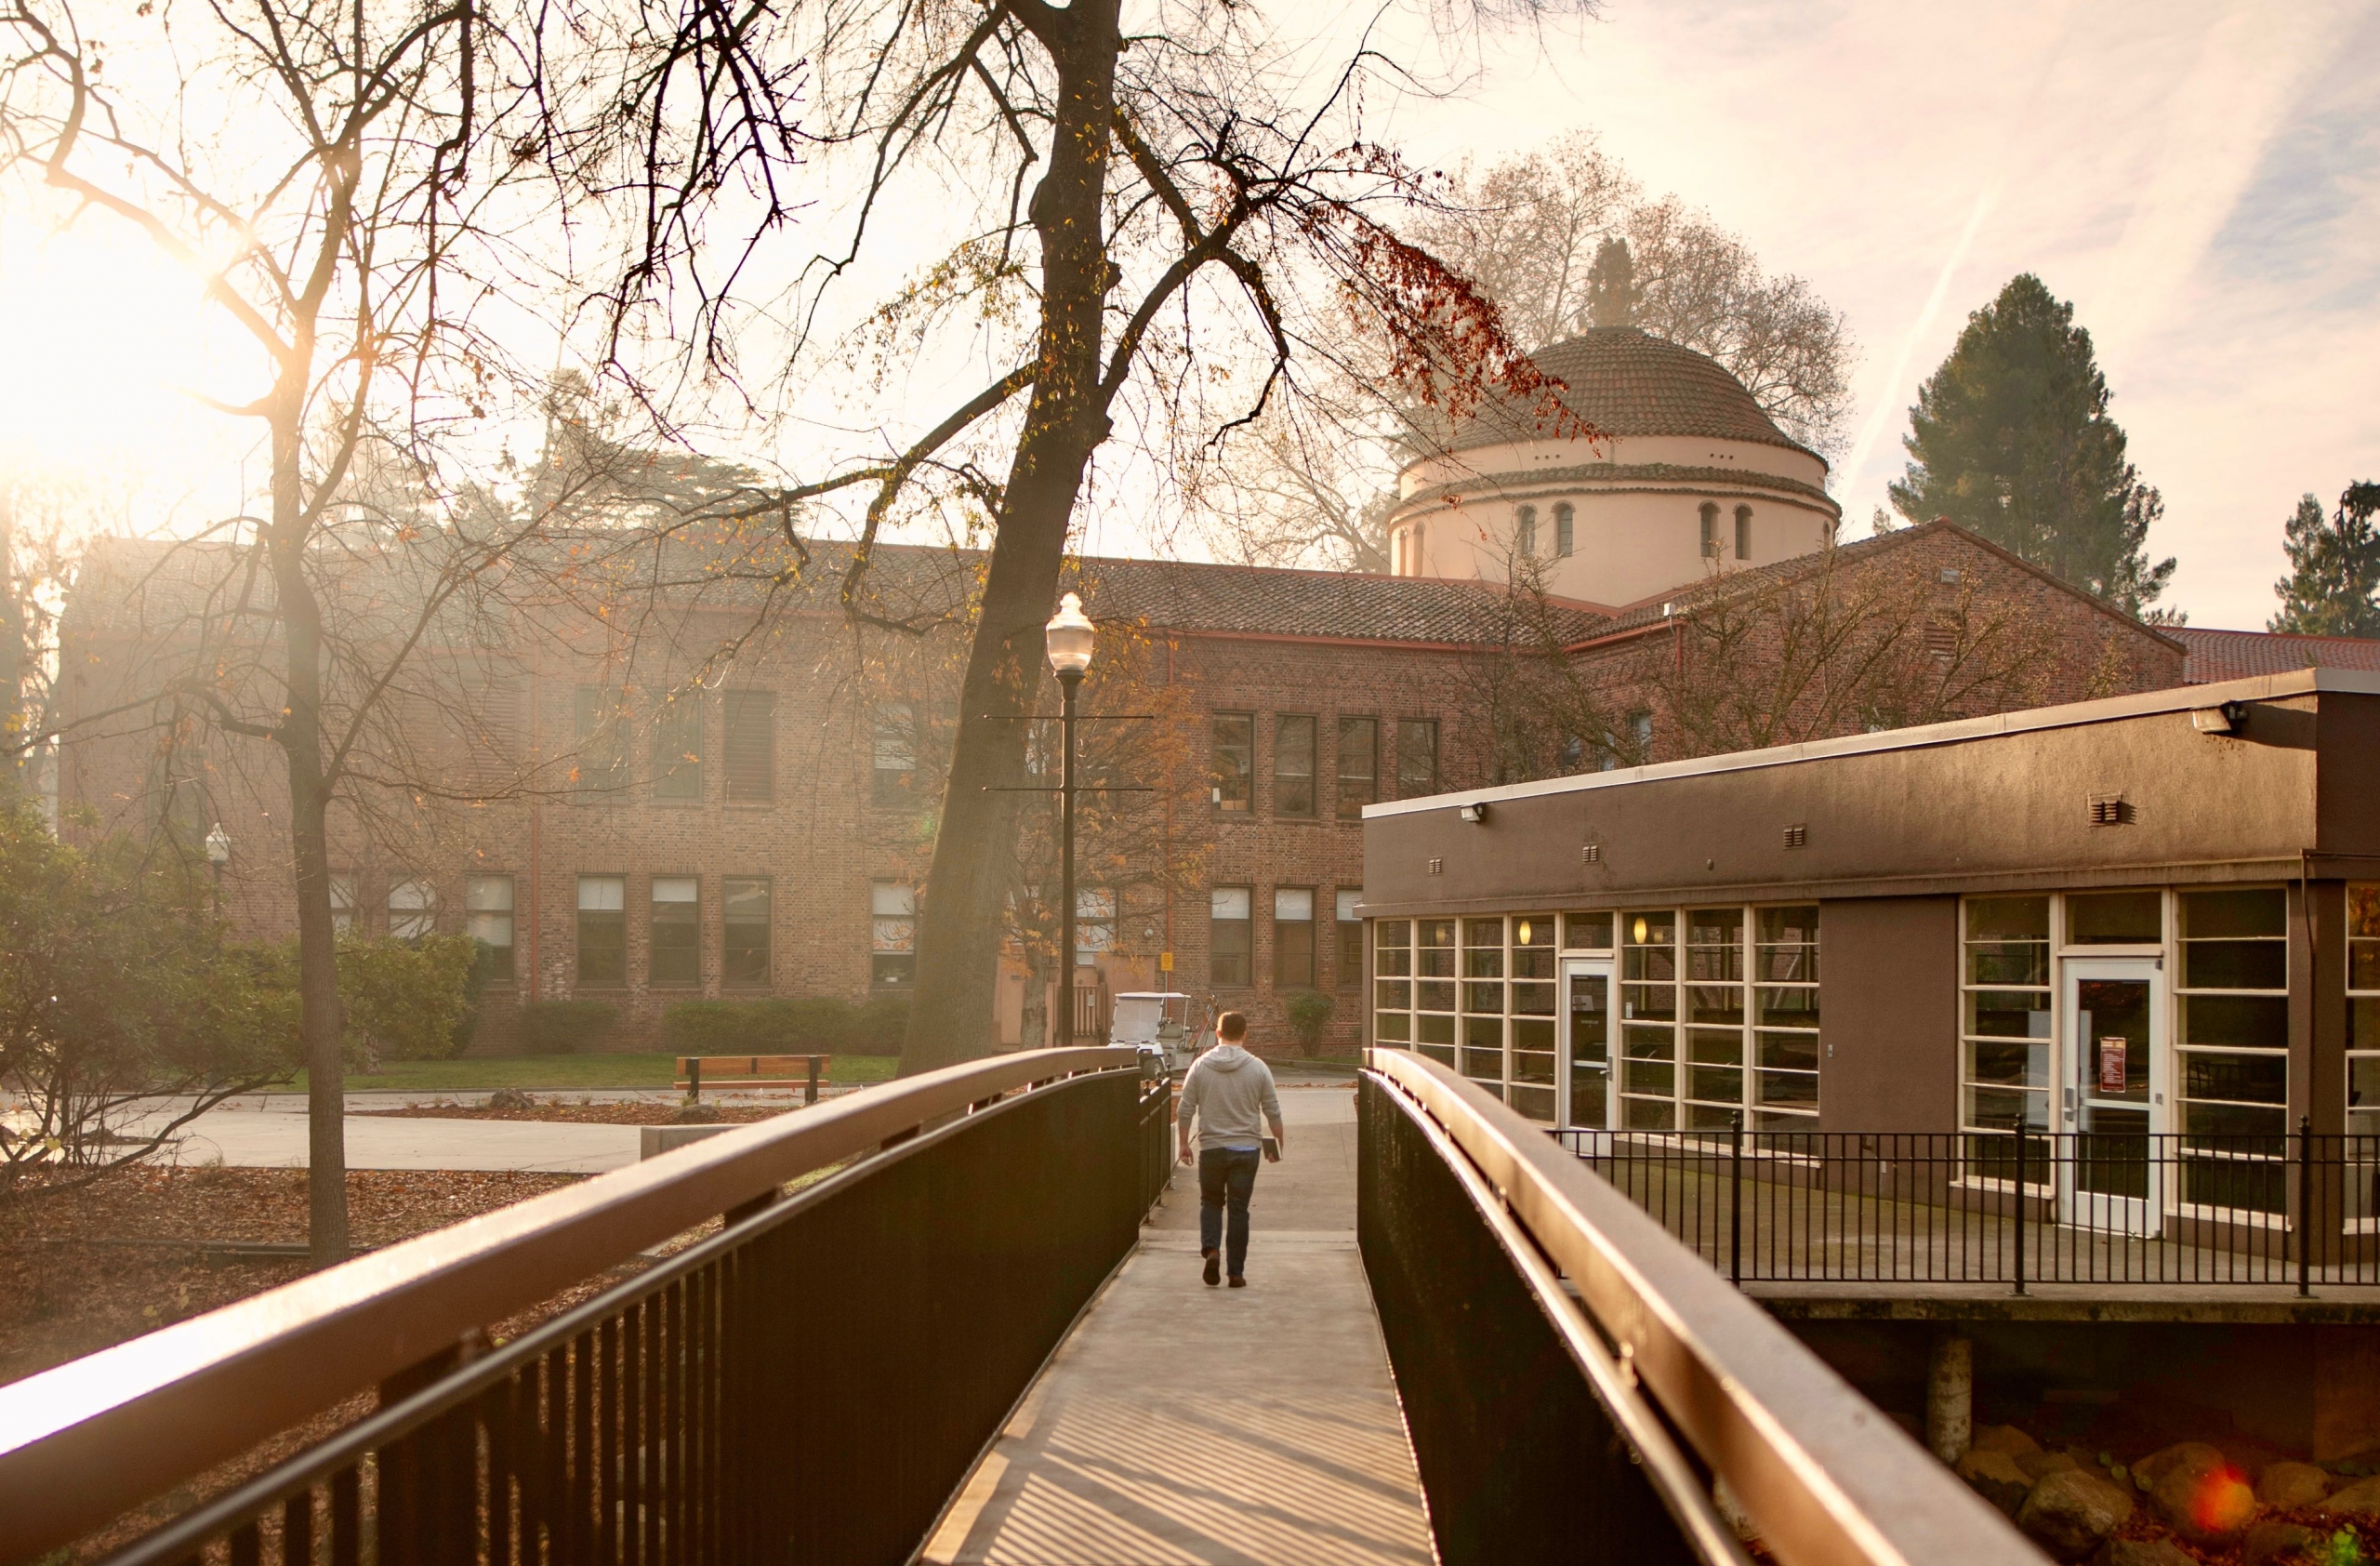 A person walks across a campus bridge, toward the rising sun.